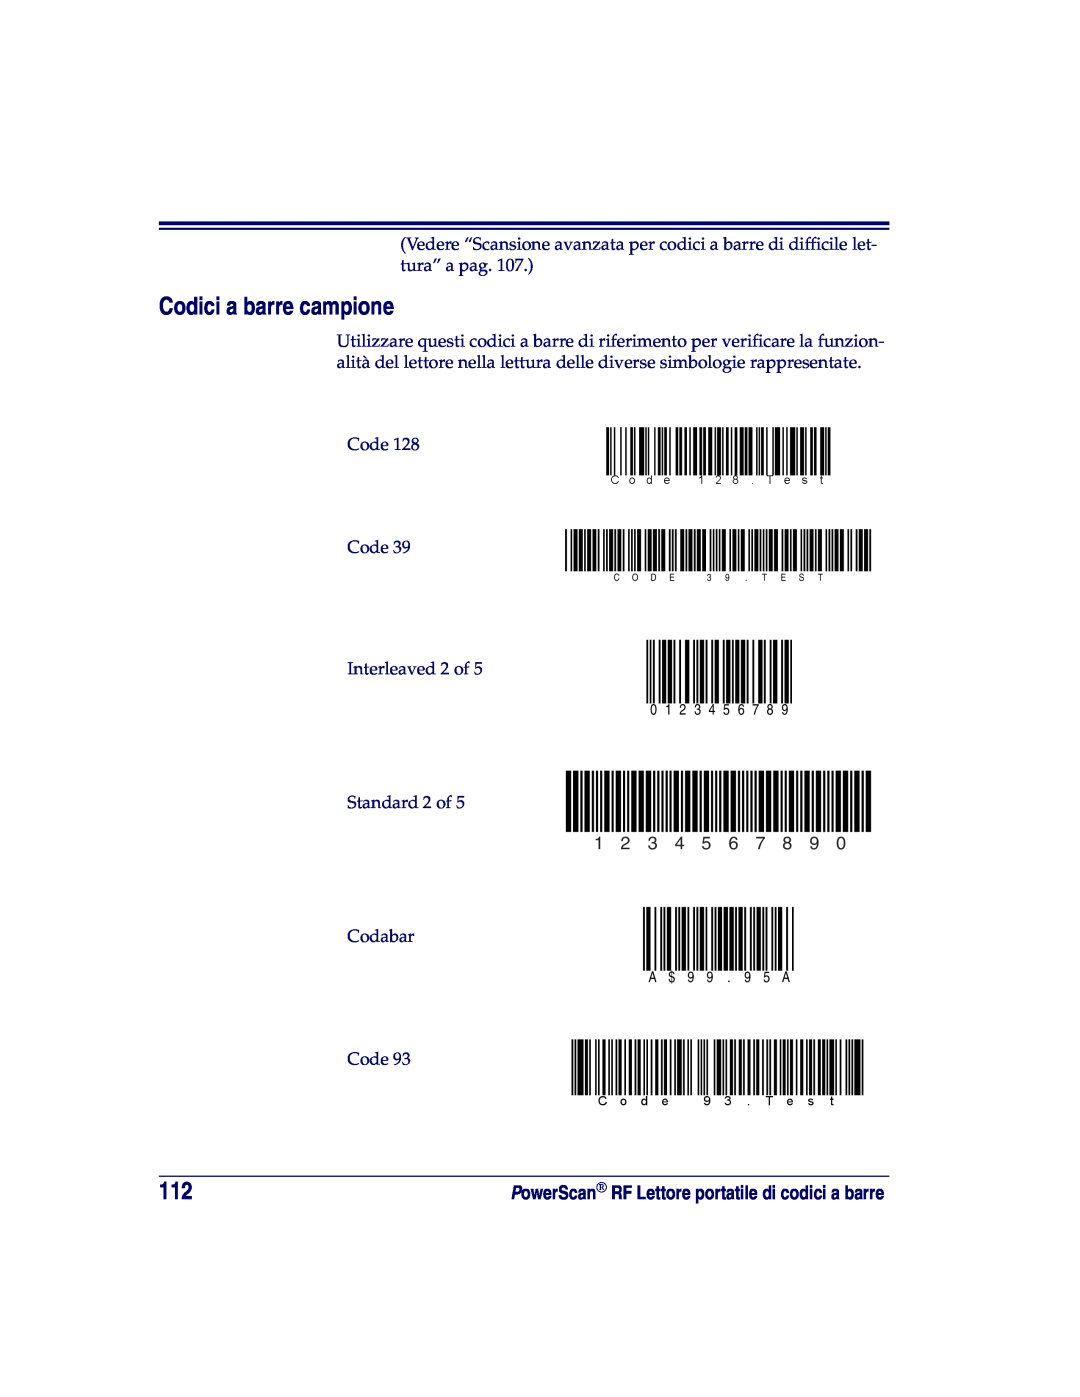 Datalogic Scanning SR, XLR, HD manual Codici a barre campione 